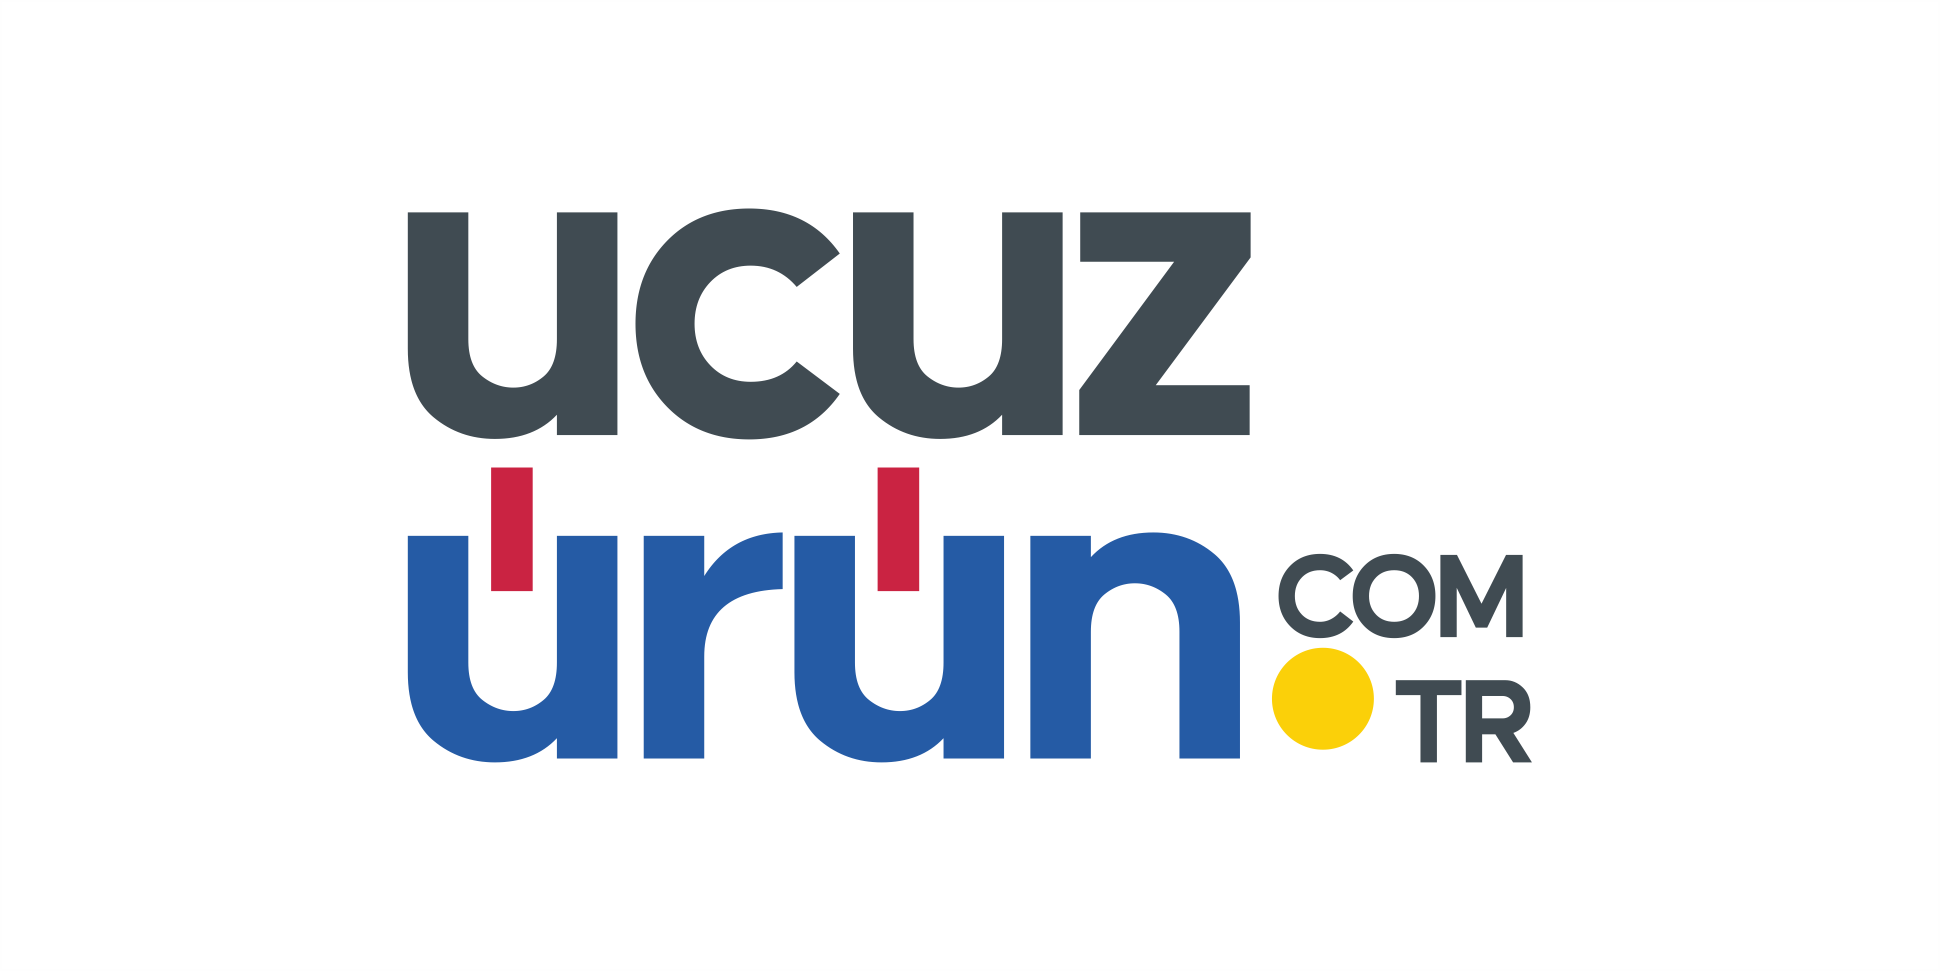 3 / Ucuzürün.com.tr